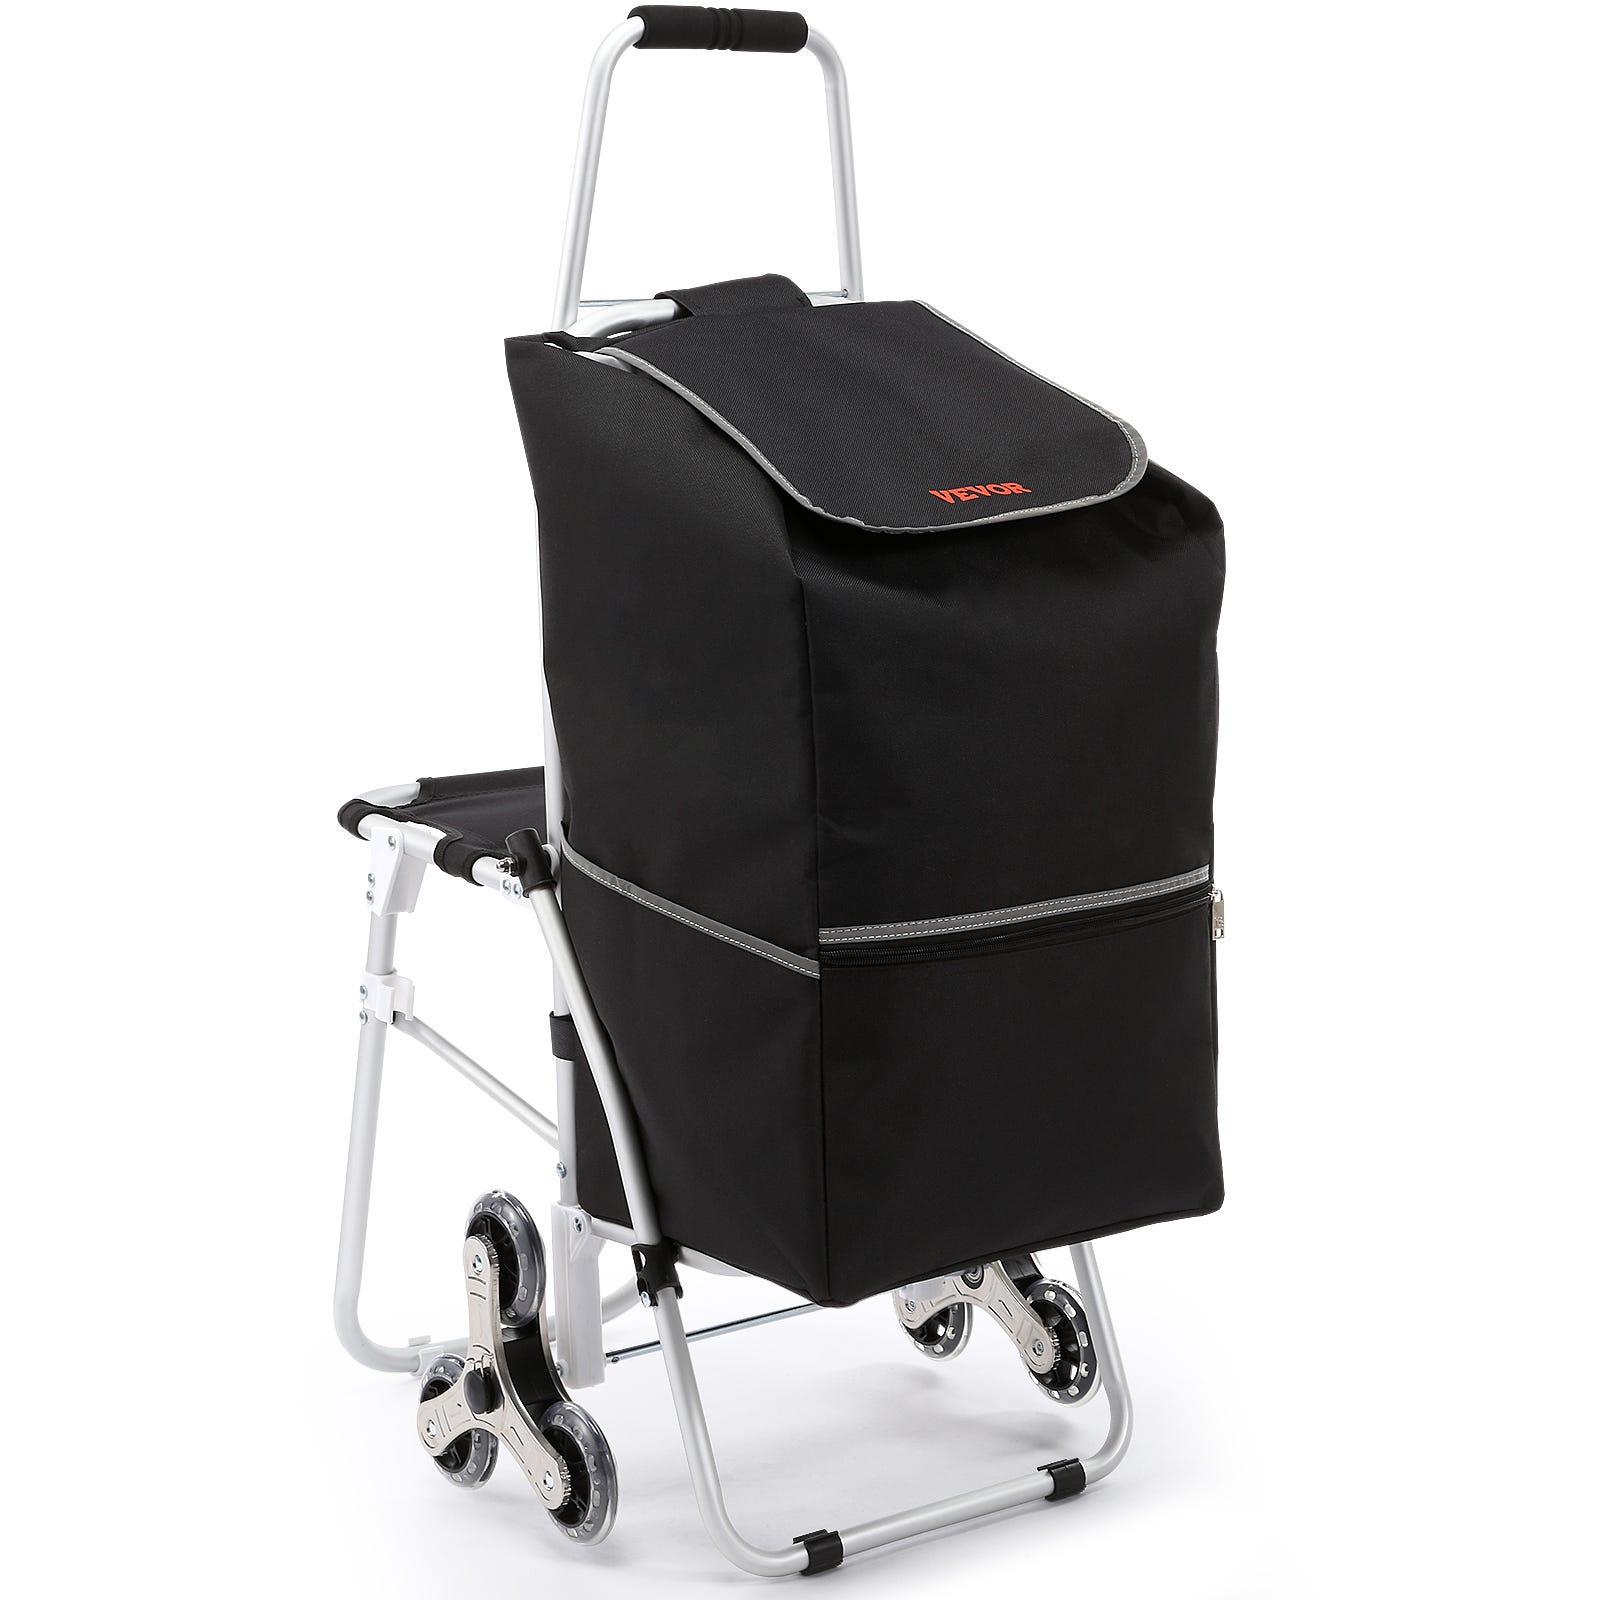 Relaxdays Chariot de courses, pliable, 25 L sac d'achats avec roulettes,chargeable  jusqu'à 10 kg, 91 x 40 x 30 cm, noir